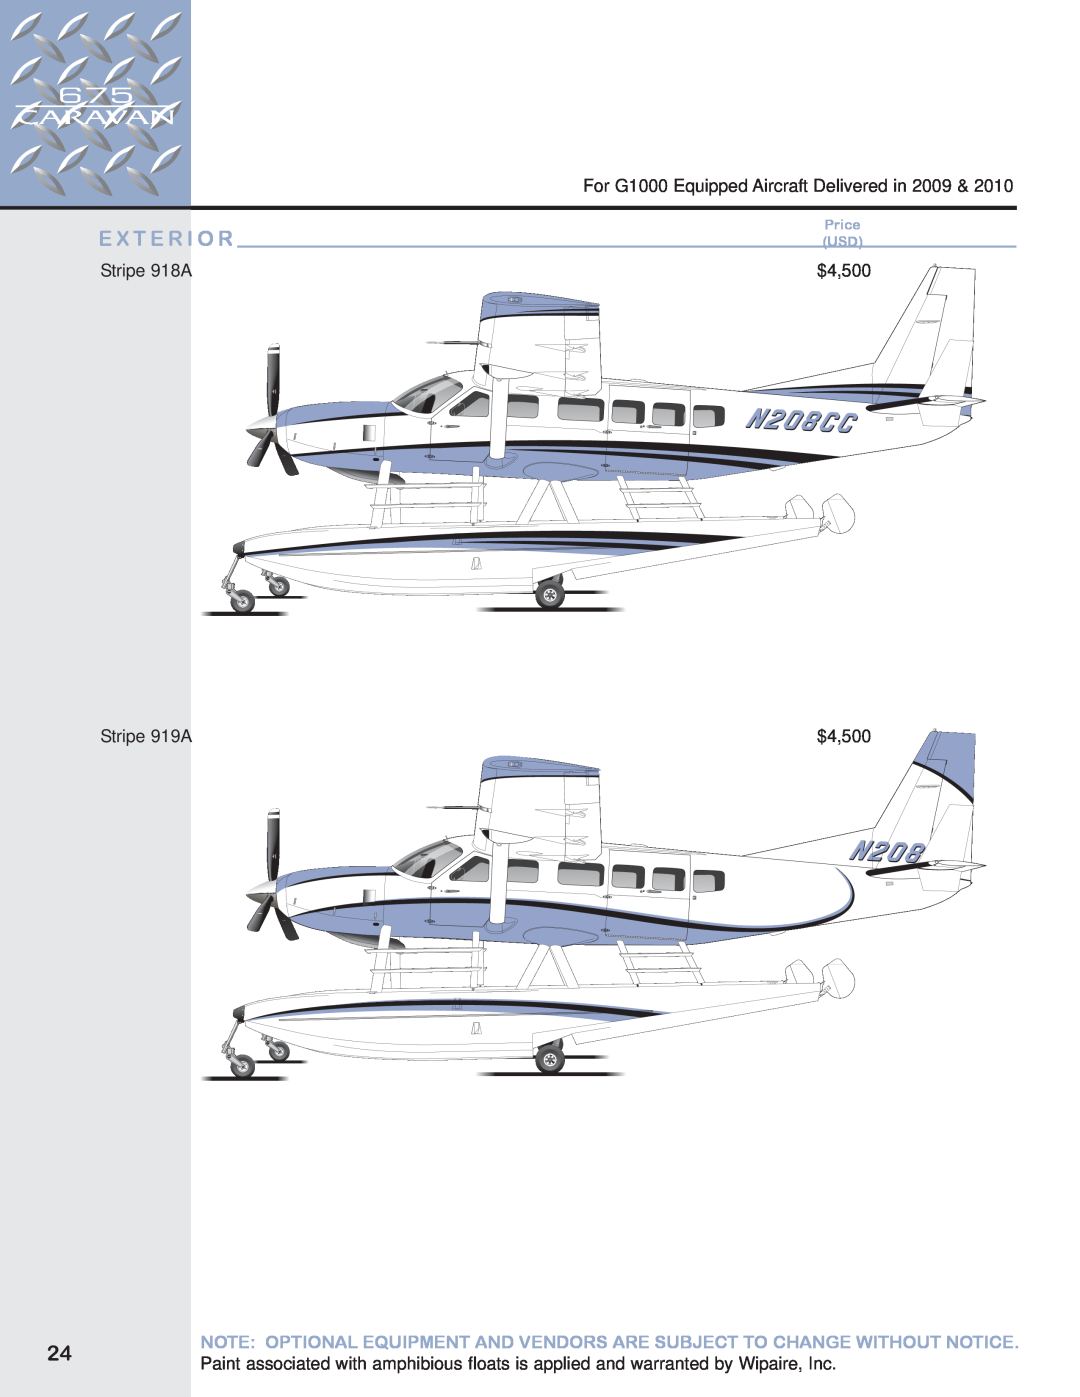 Garmin 675 manual E X T E R I O R, For G1000 Equipped Aircraft Delivered in, Stripe 918A, $4,500, Stripe 919A, Price USD 